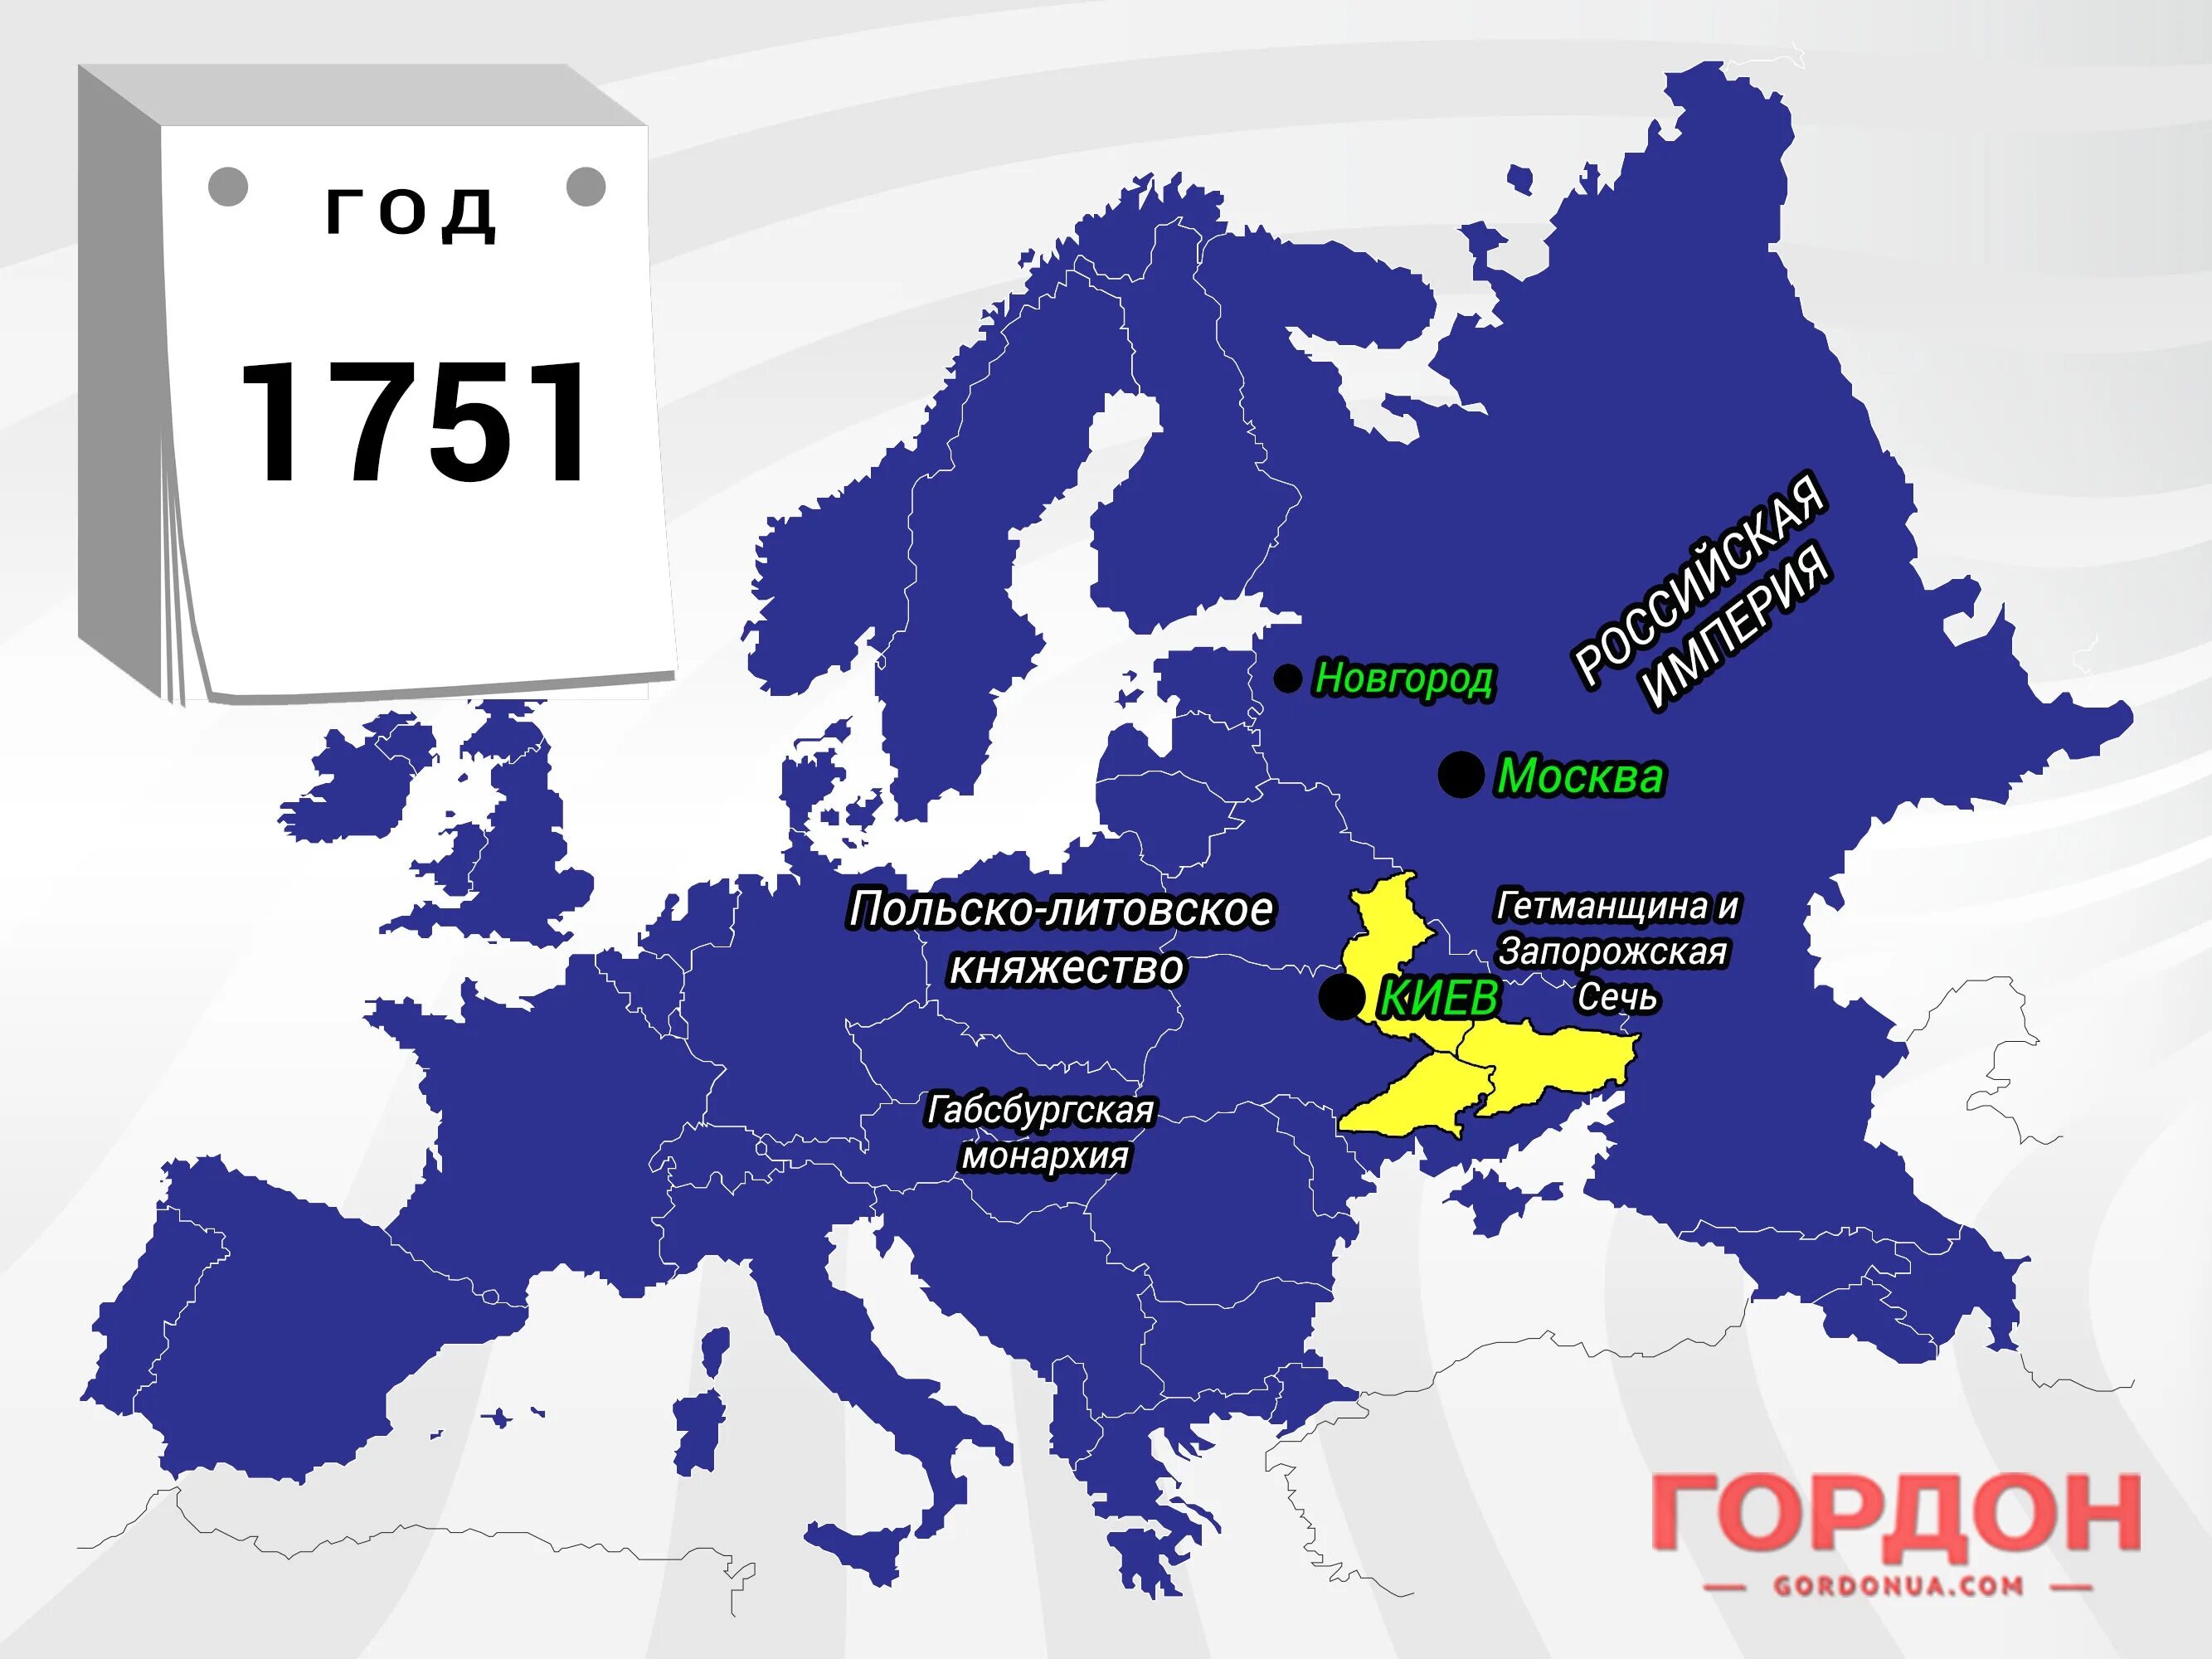 1400 рф. Украина на карте Европы. Территория Украины и Европы. Уераинана карте Европы. Территория Украины в 2050 году.